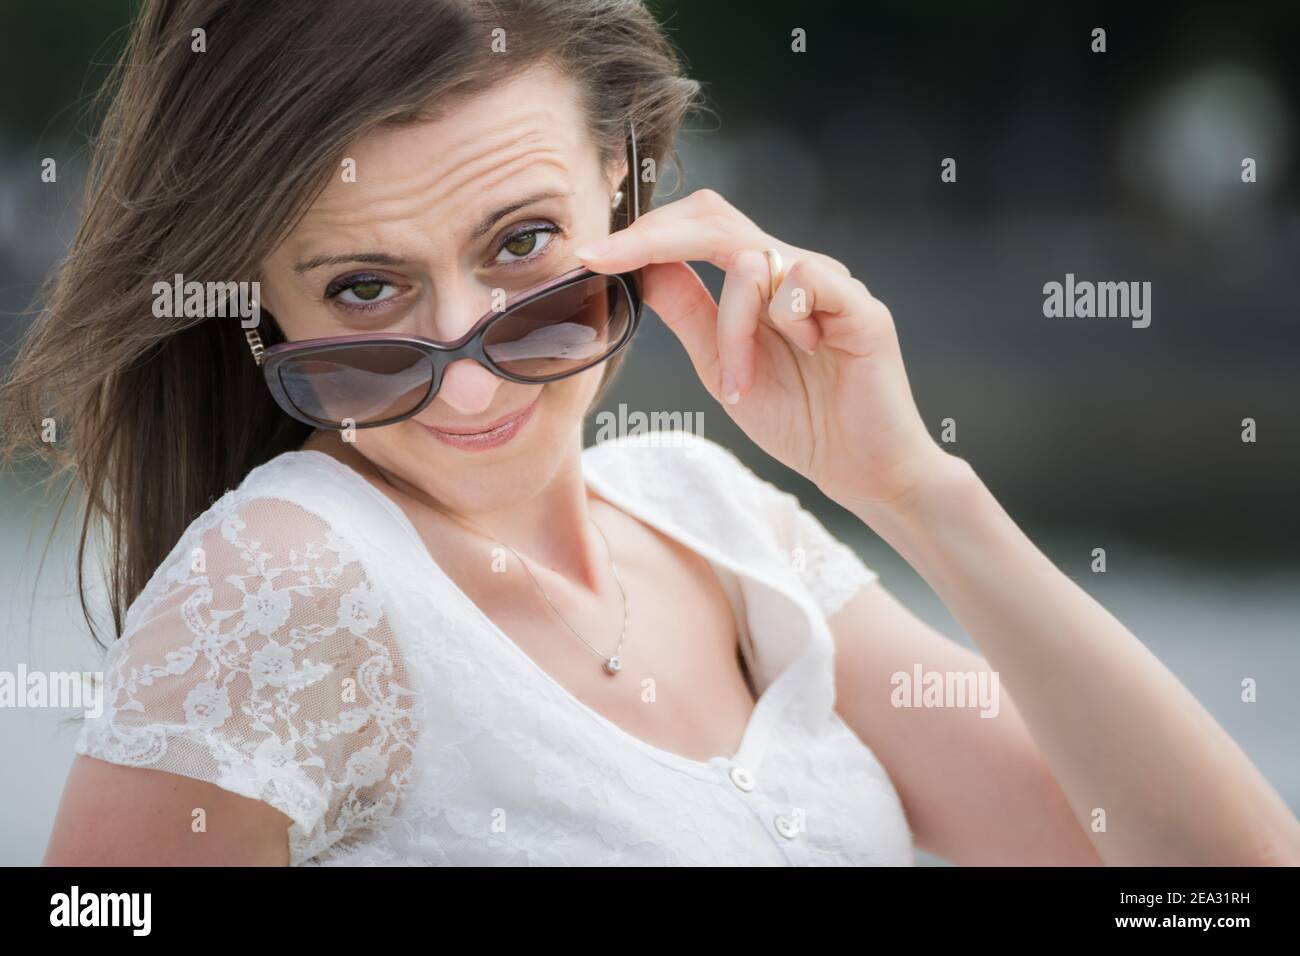 Porträt einer jungen kaukasischen Frau, die über eine große Sonnenbrille schaut Stockfoto